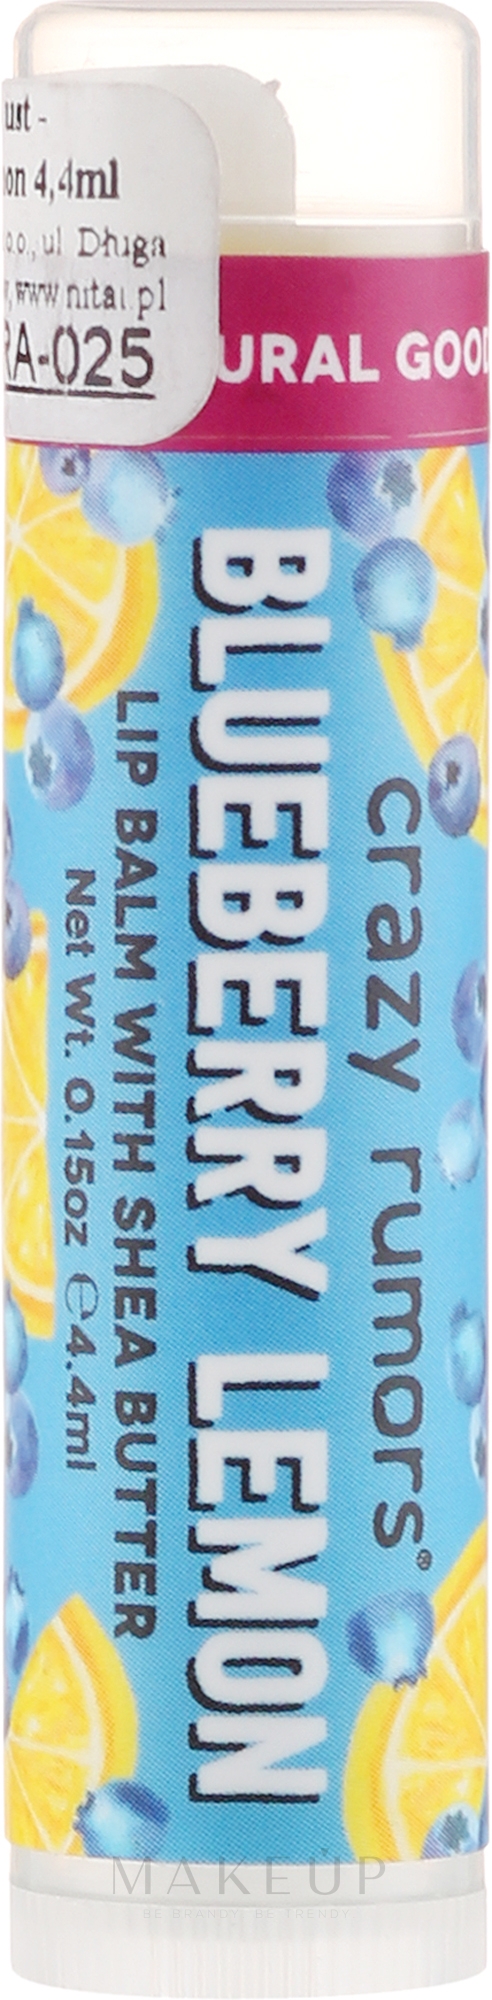 Lippenbalsam mit Blaubeer- und Zitronenduft - Crazy Rumors Blueberry Lemon Lip Balm — Bild 4.25 ml